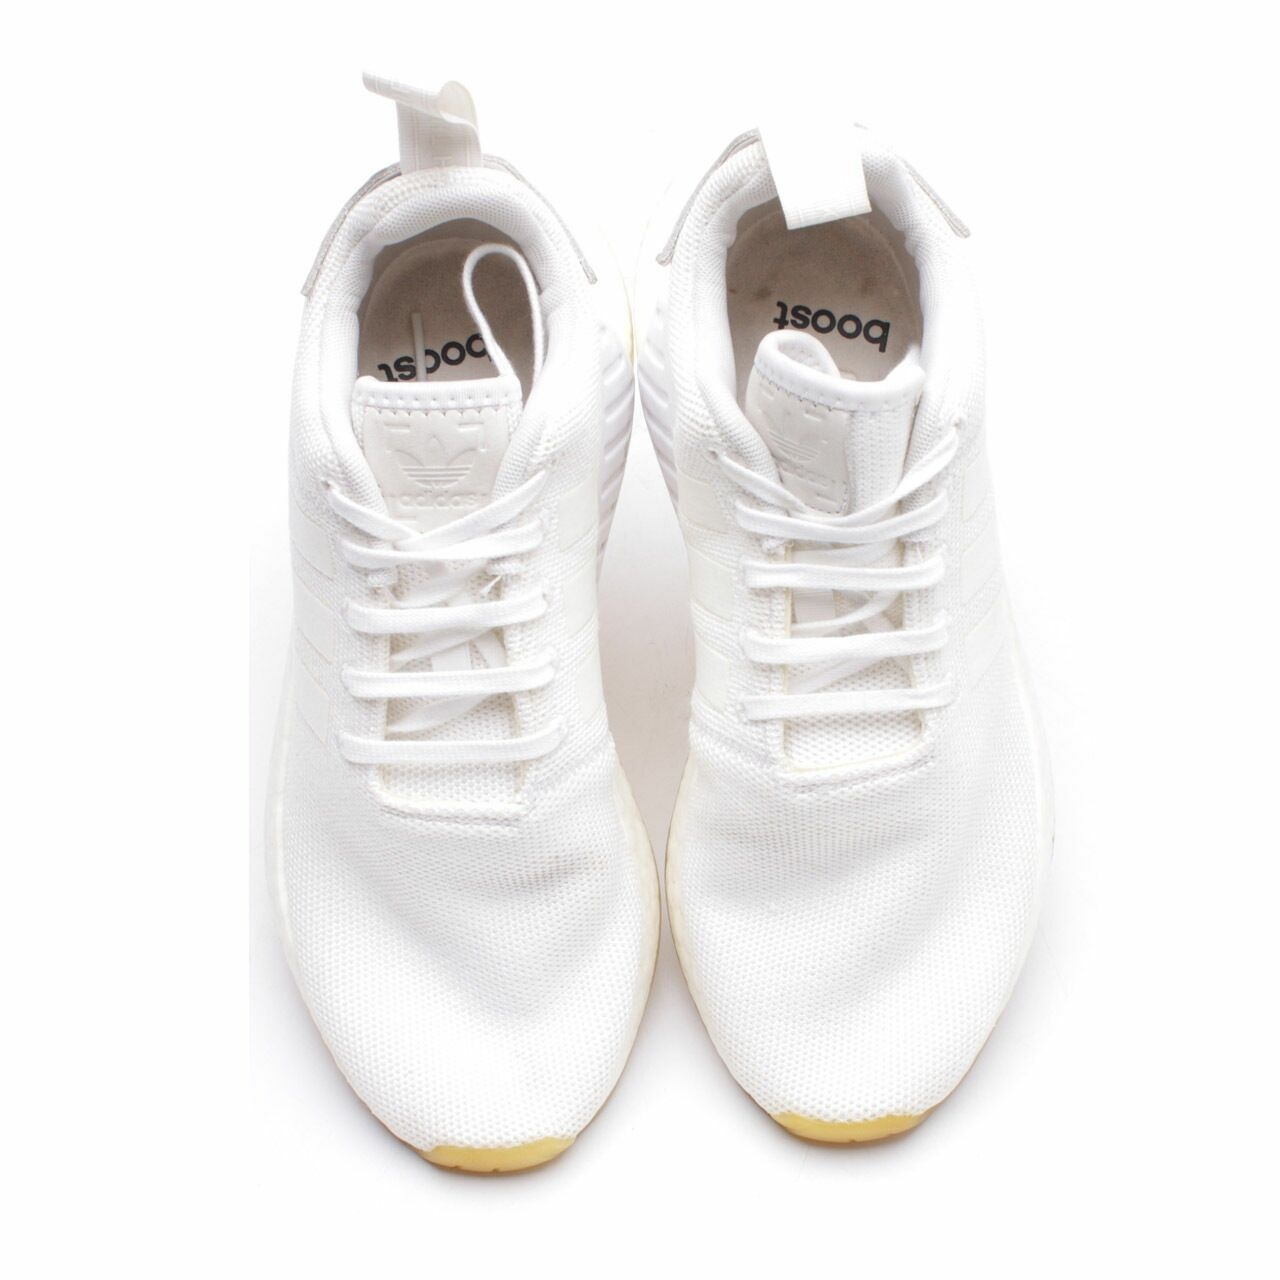 Adidas White Sneakers